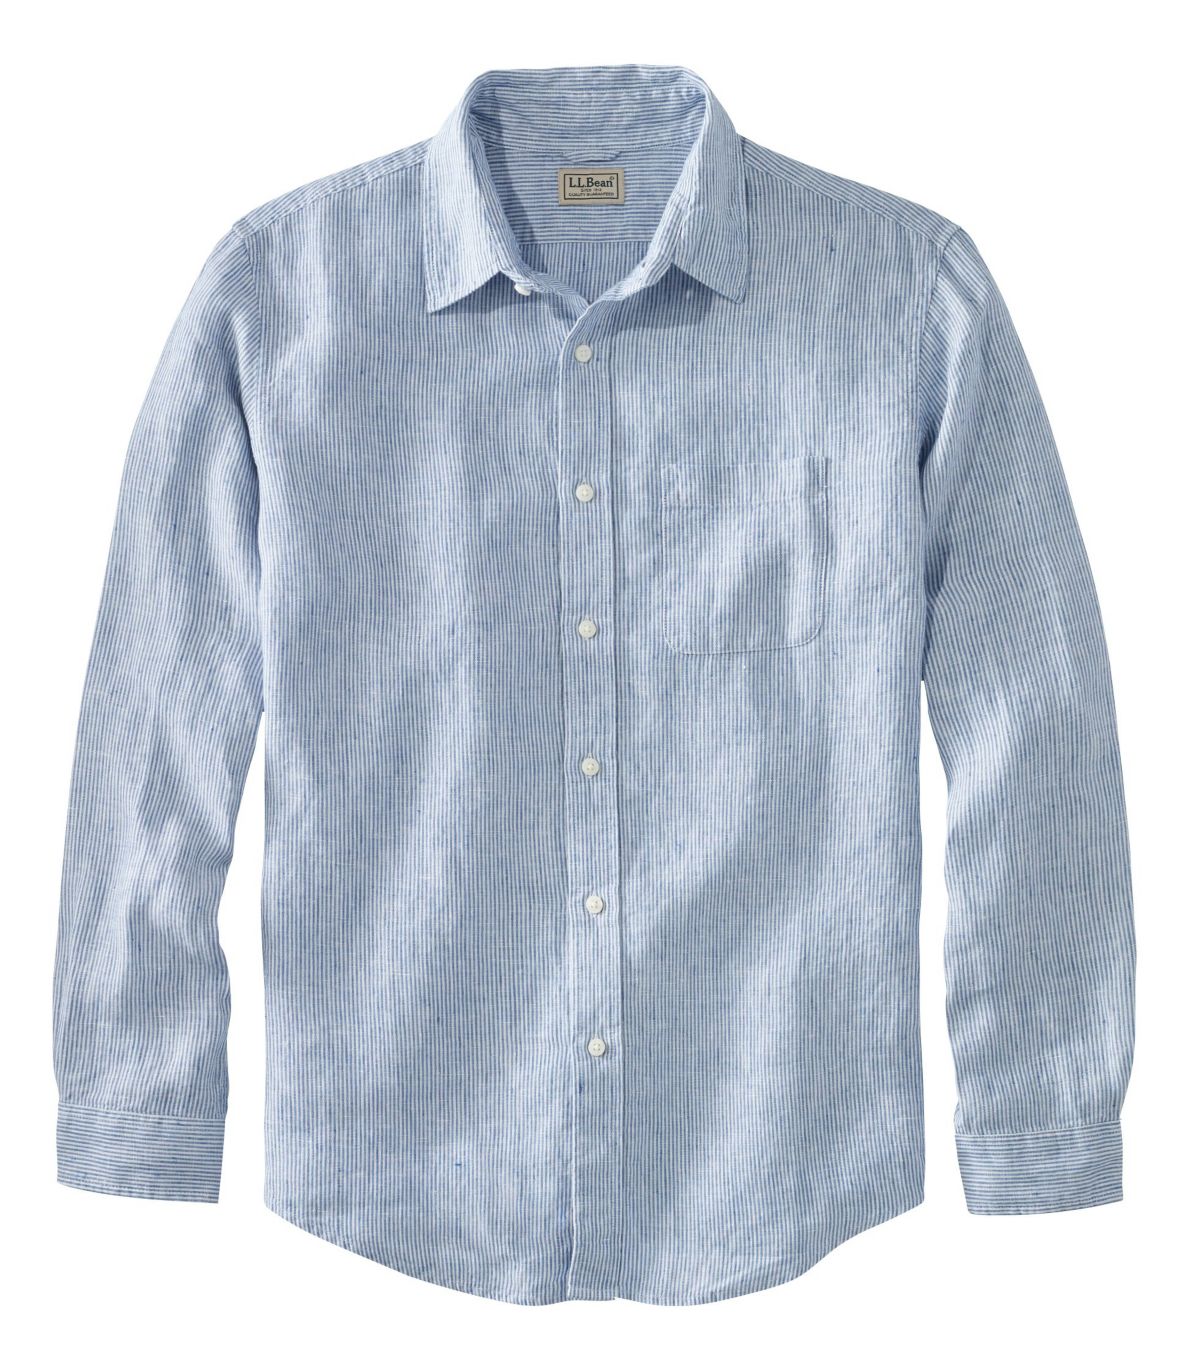 Men's L.L.Bean Linen Shirt, Slightly Fitted Long-Sleeve Stripe